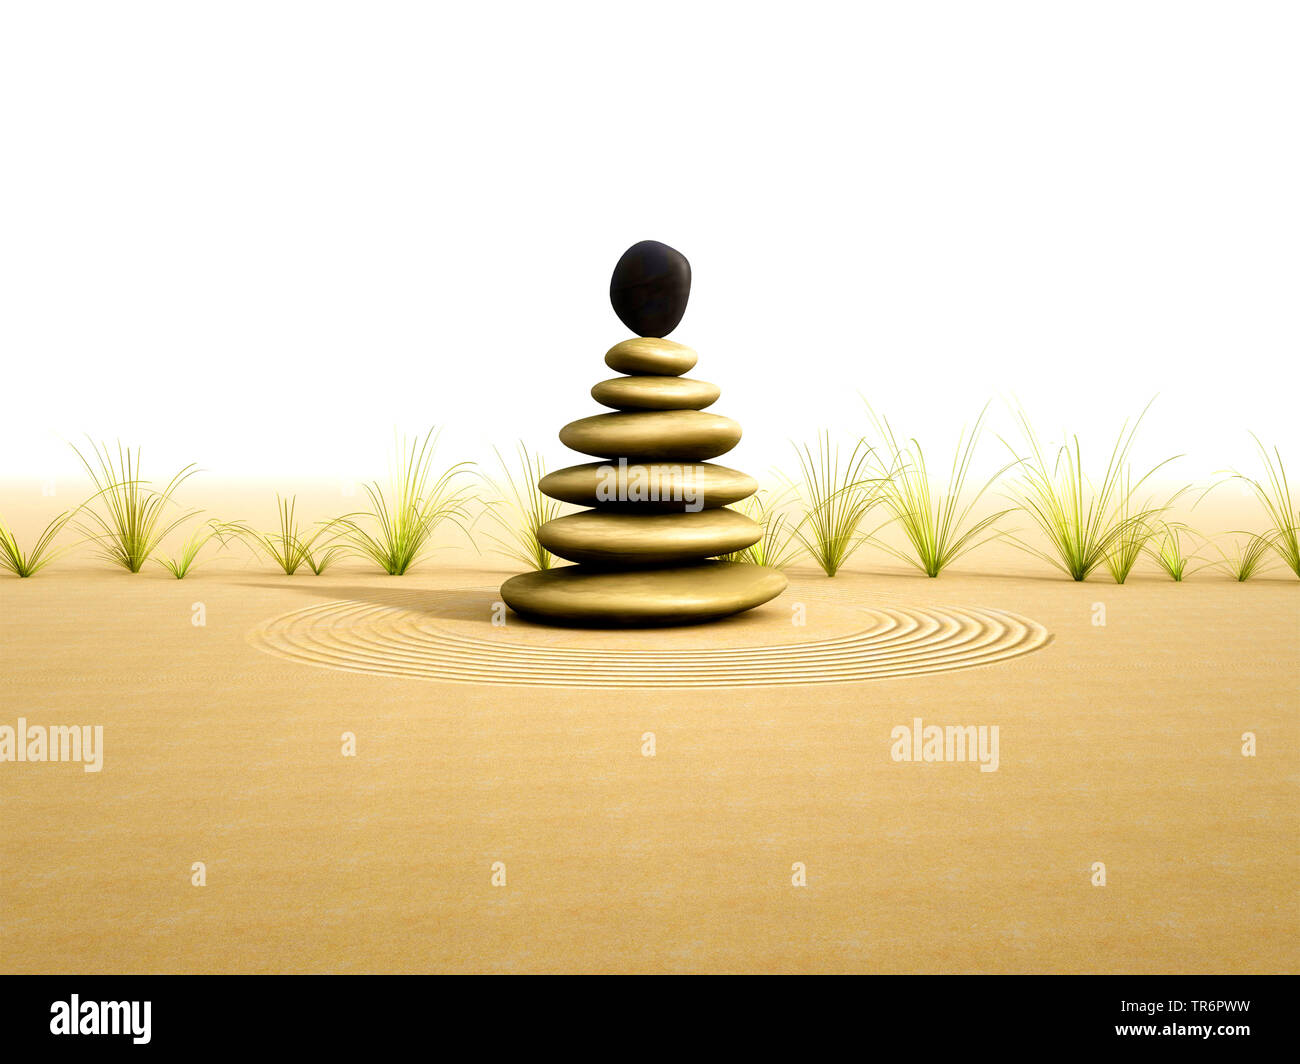 Kleine Pyramide von Steinen auf Sand, Computer Graphik Stockfoto